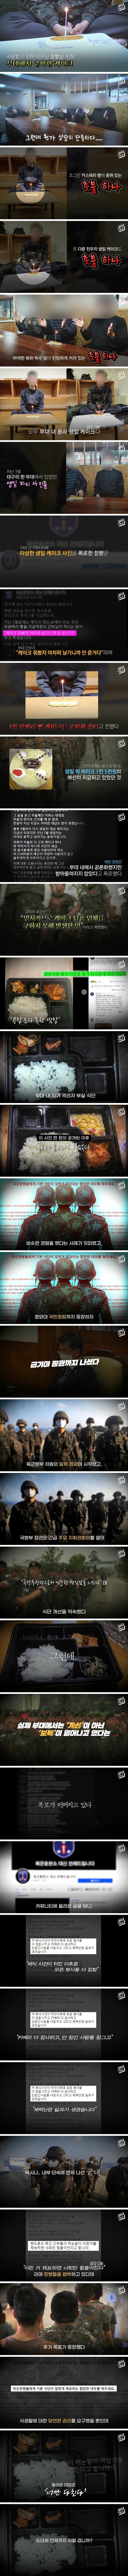 [엠빅뉴스] 군대 천원짜리 케익의 진실은?